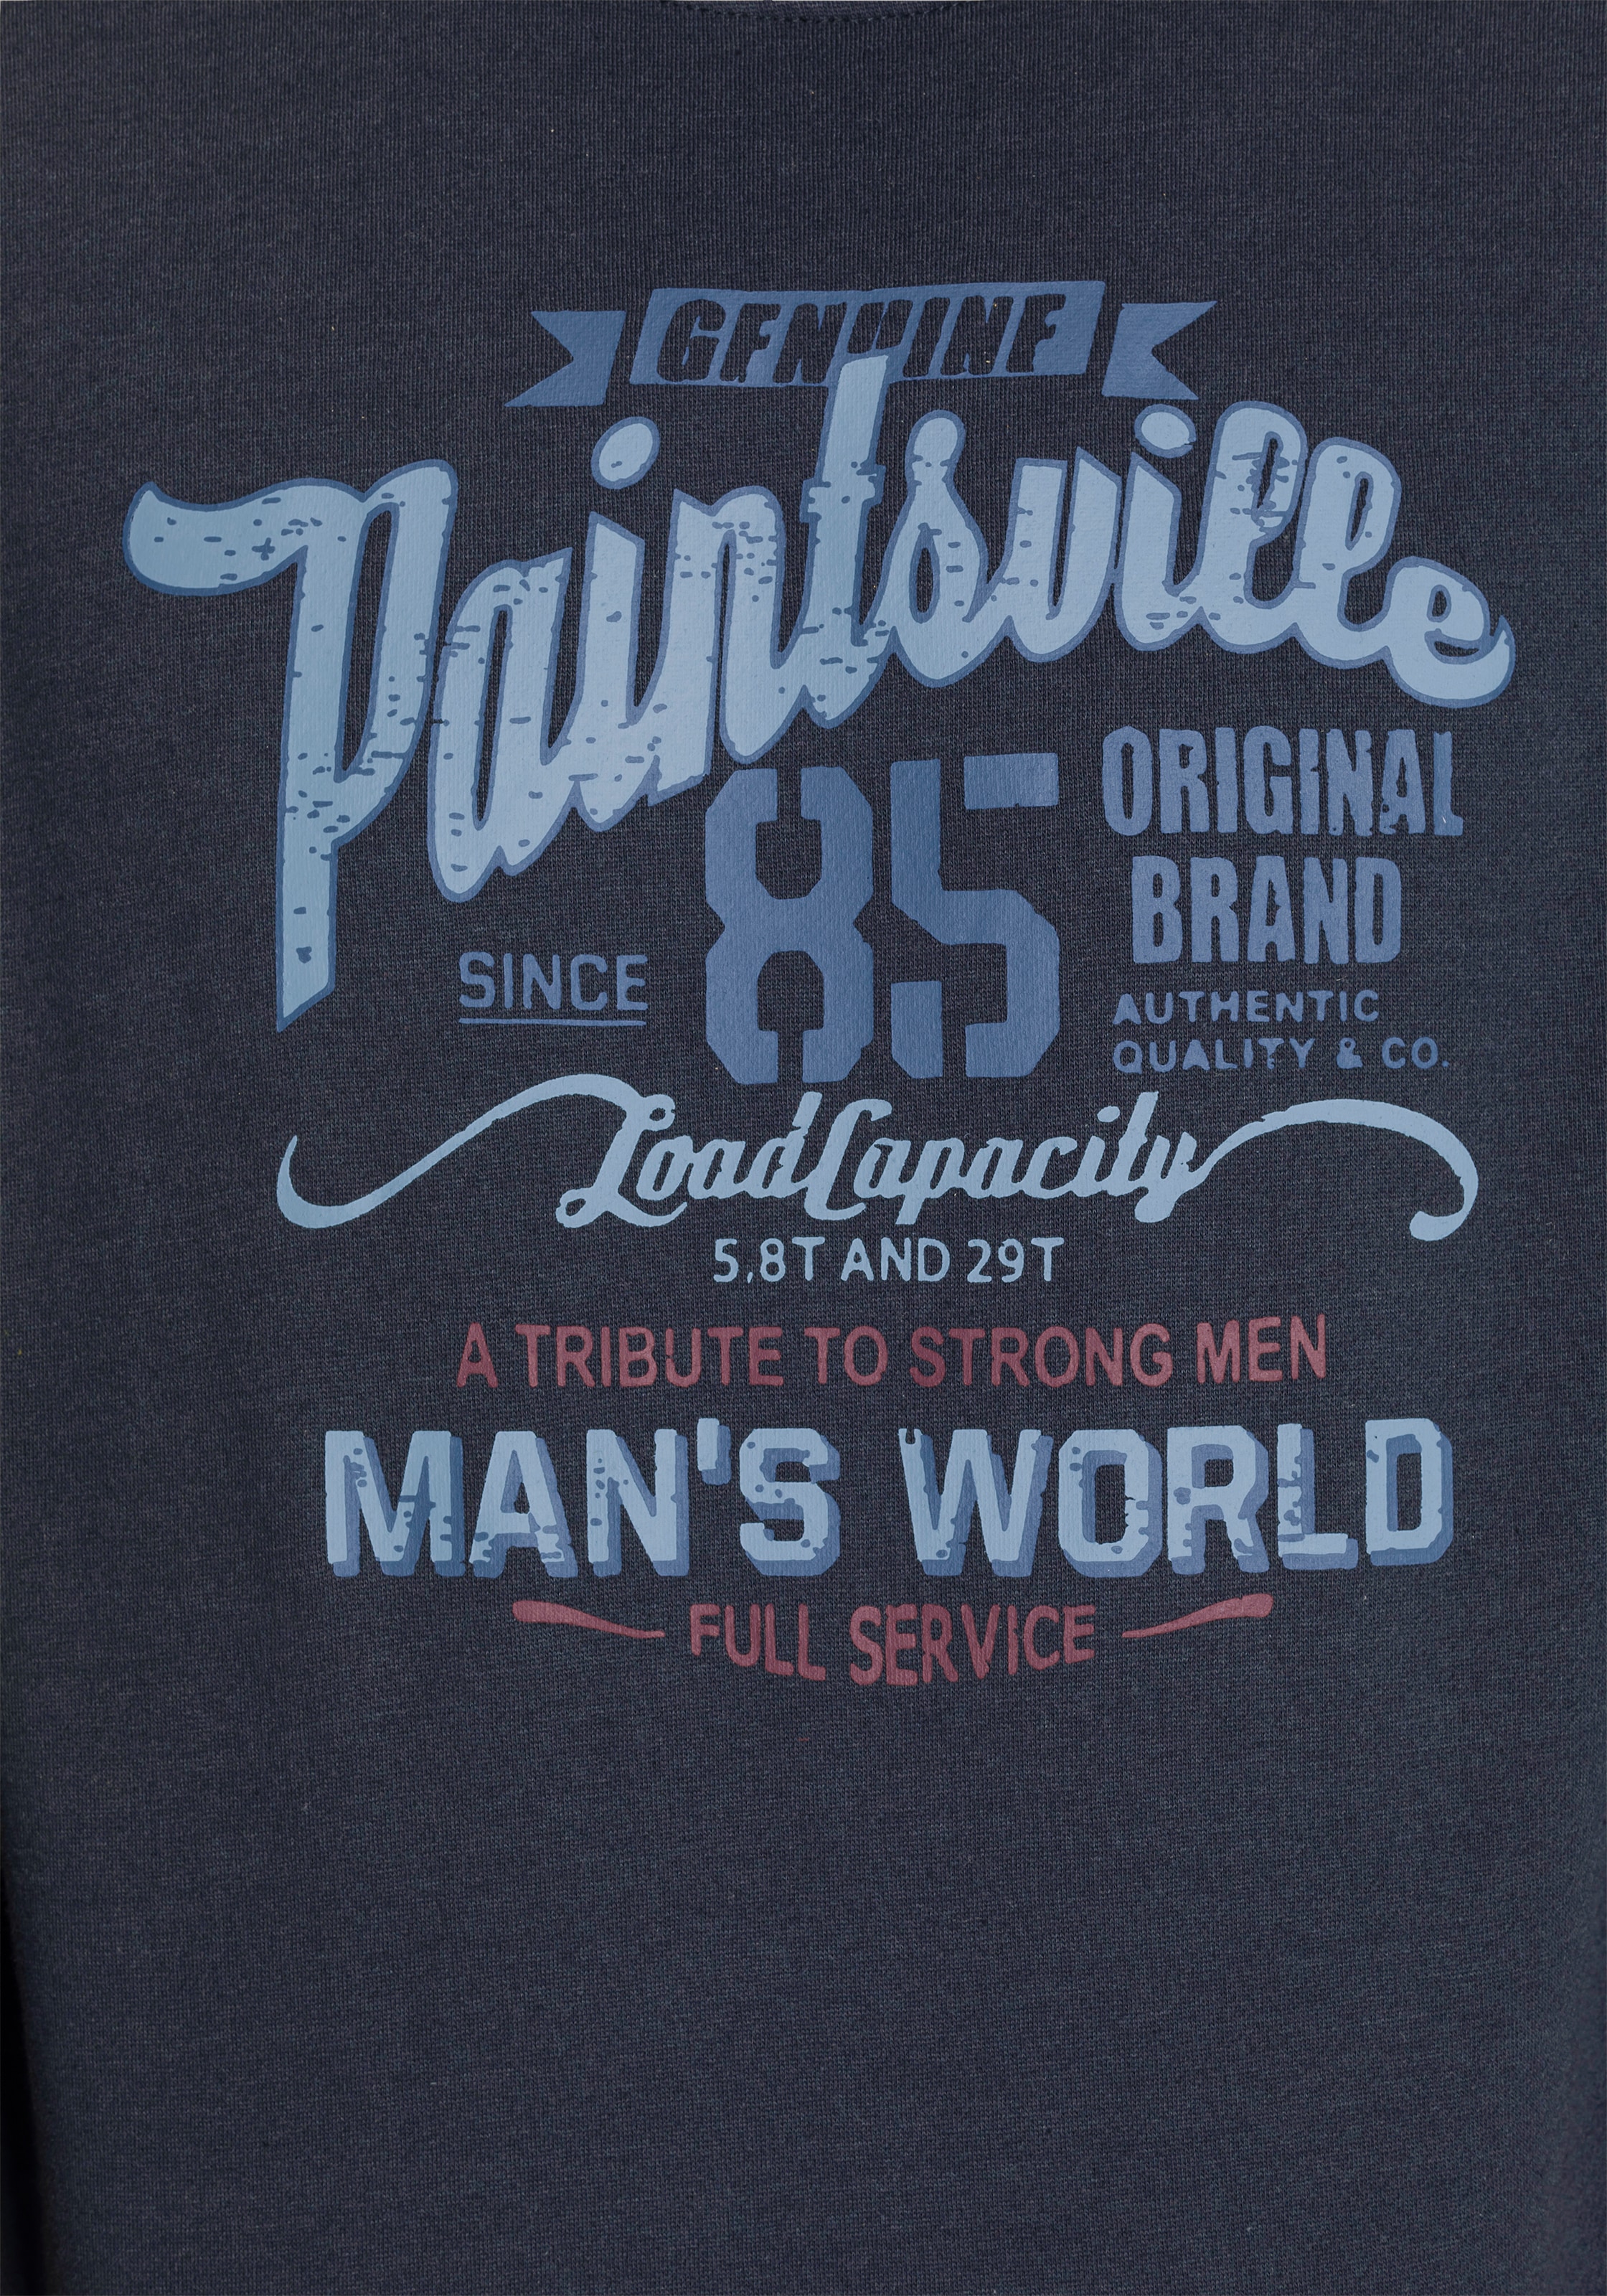 Man's World Sweatshirt, mit Brustprint